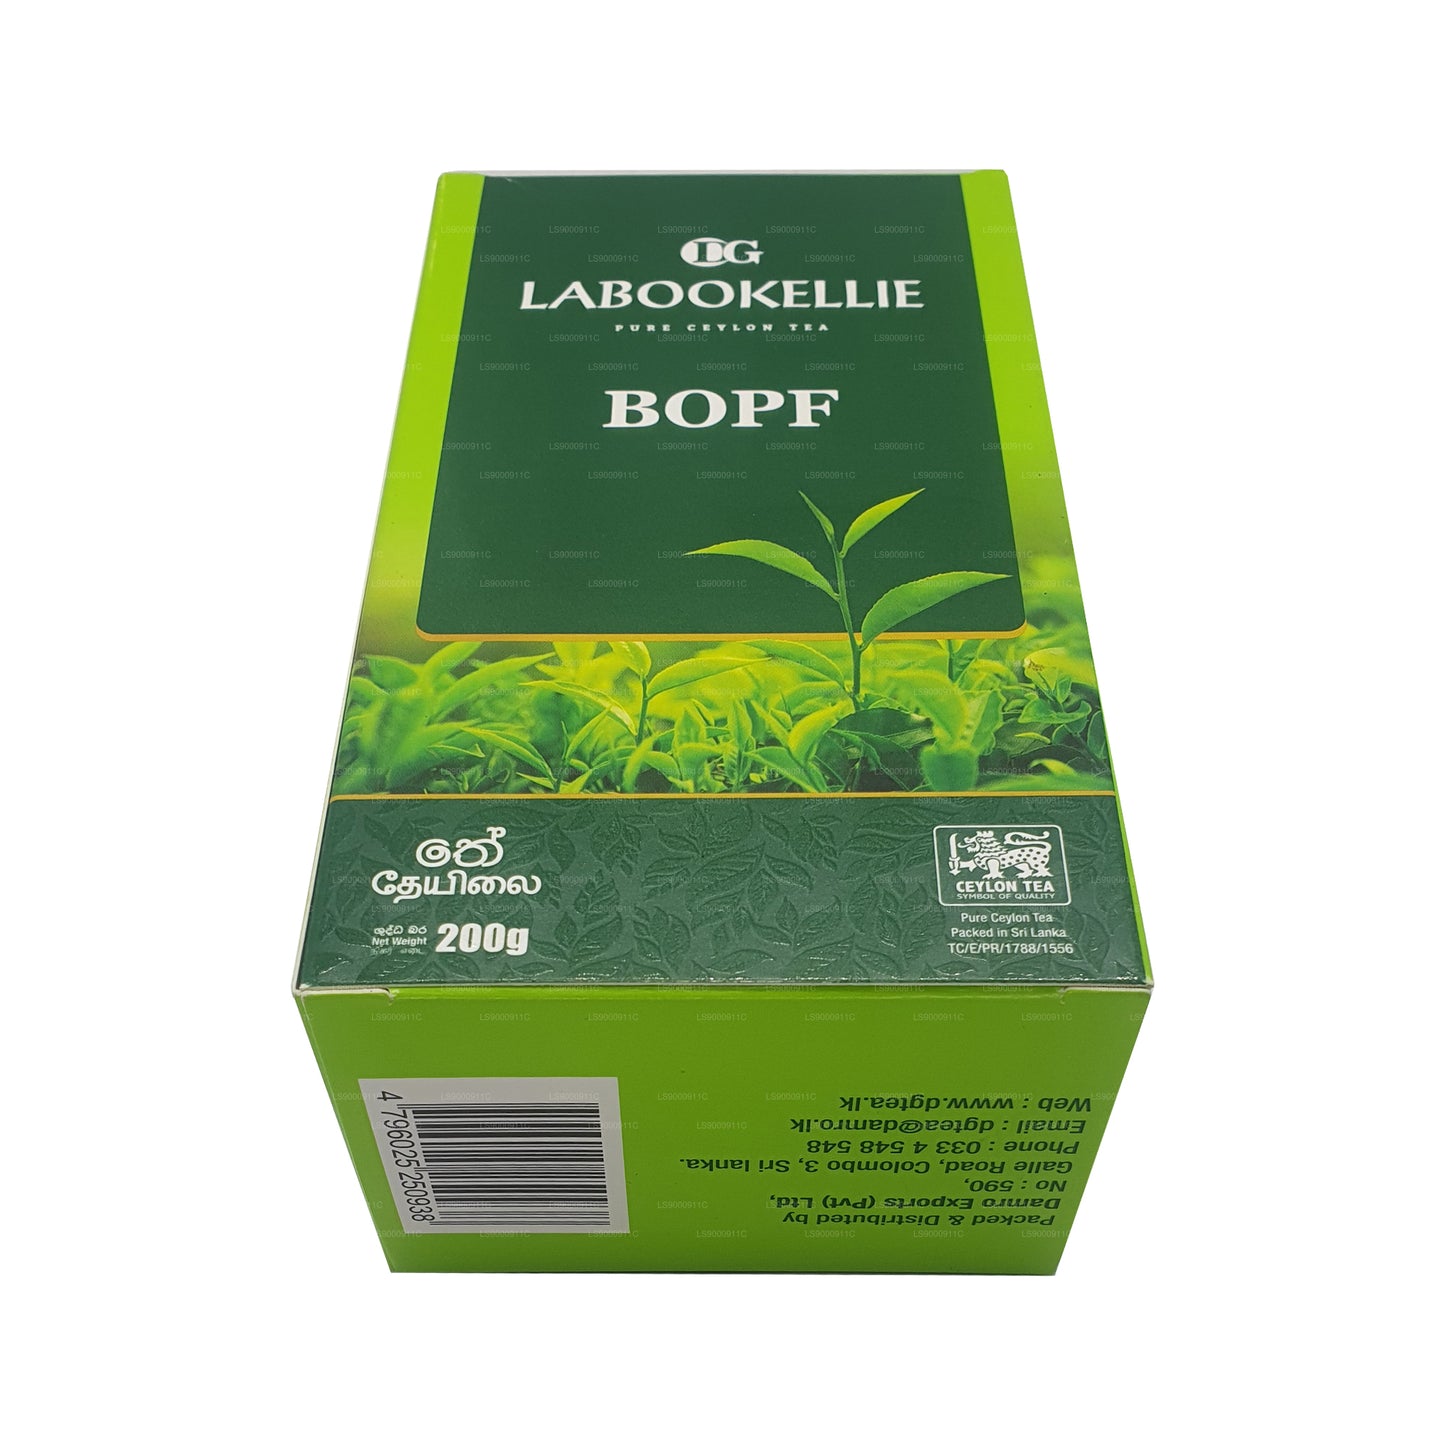 DG Labookellie BOPF Tea (200 g)